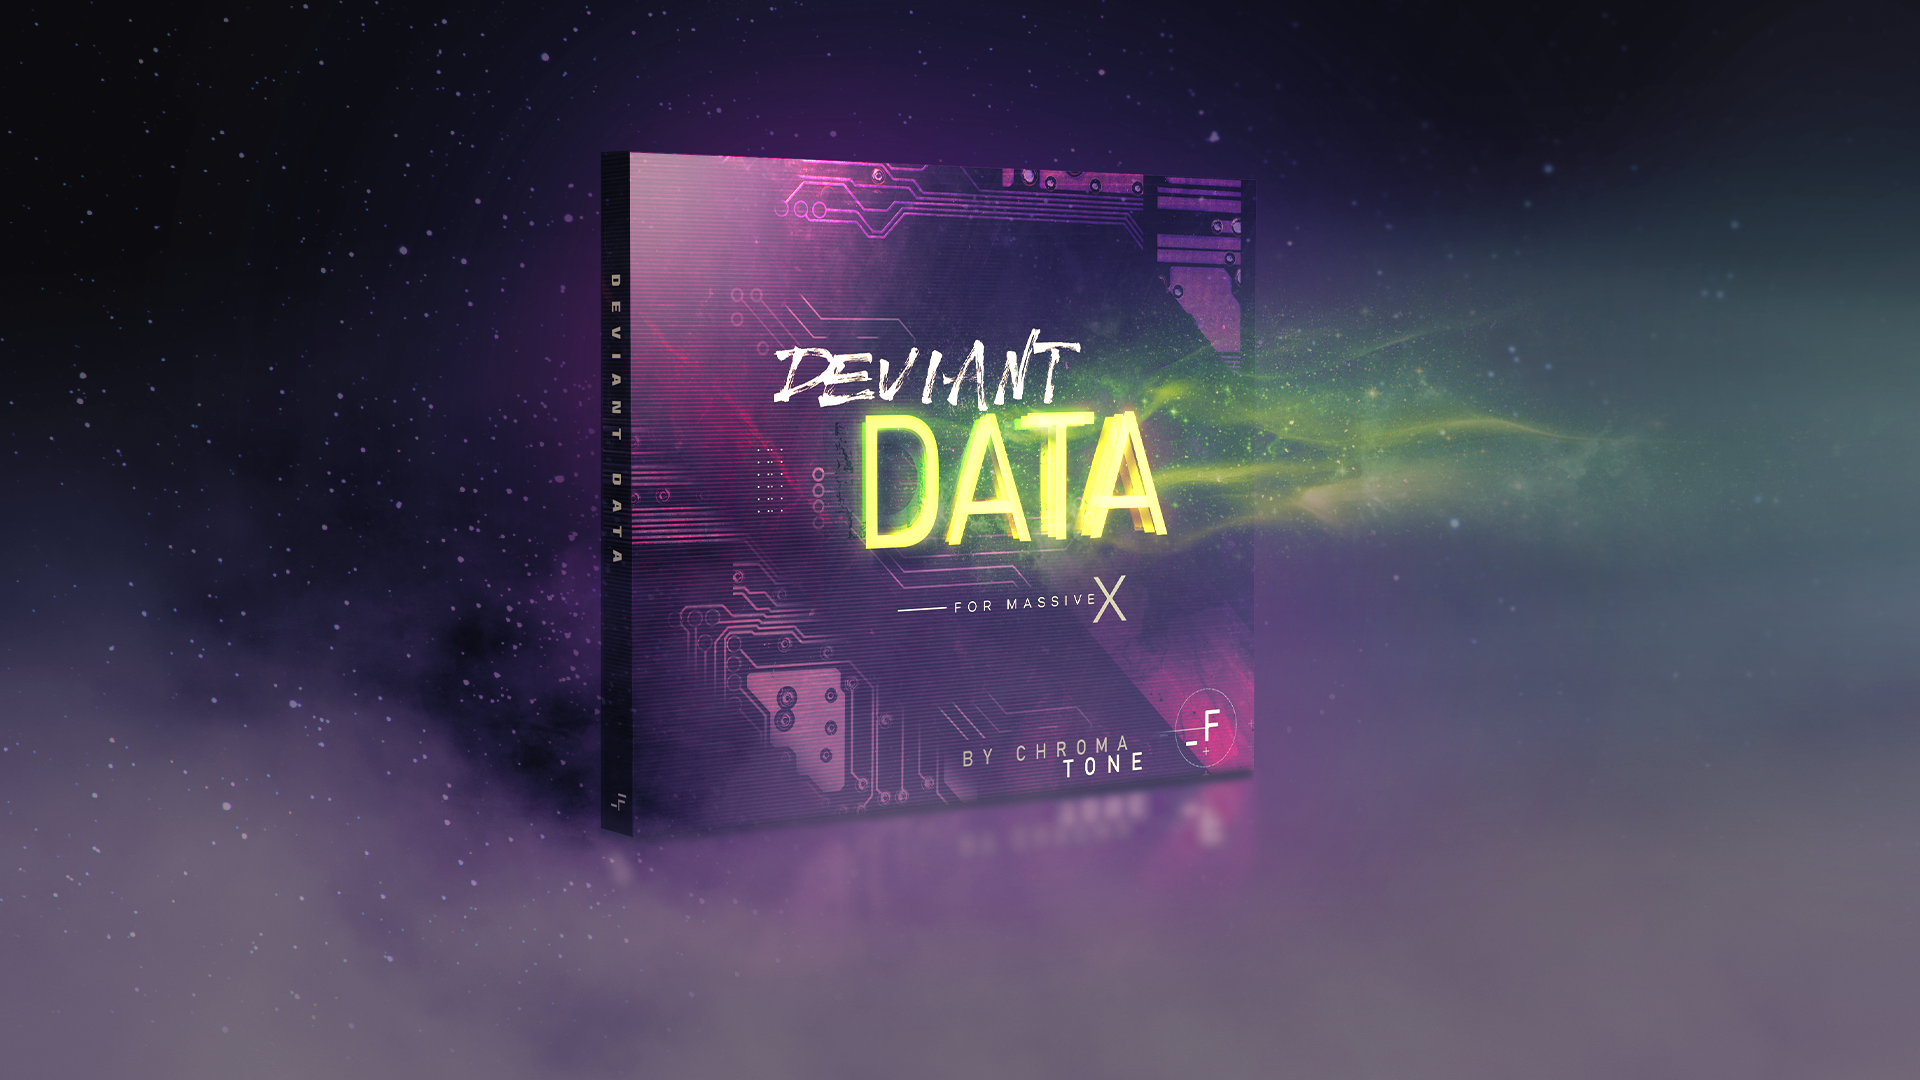 [Deviant Data] for Massive X by Chromatone - Futurephonic